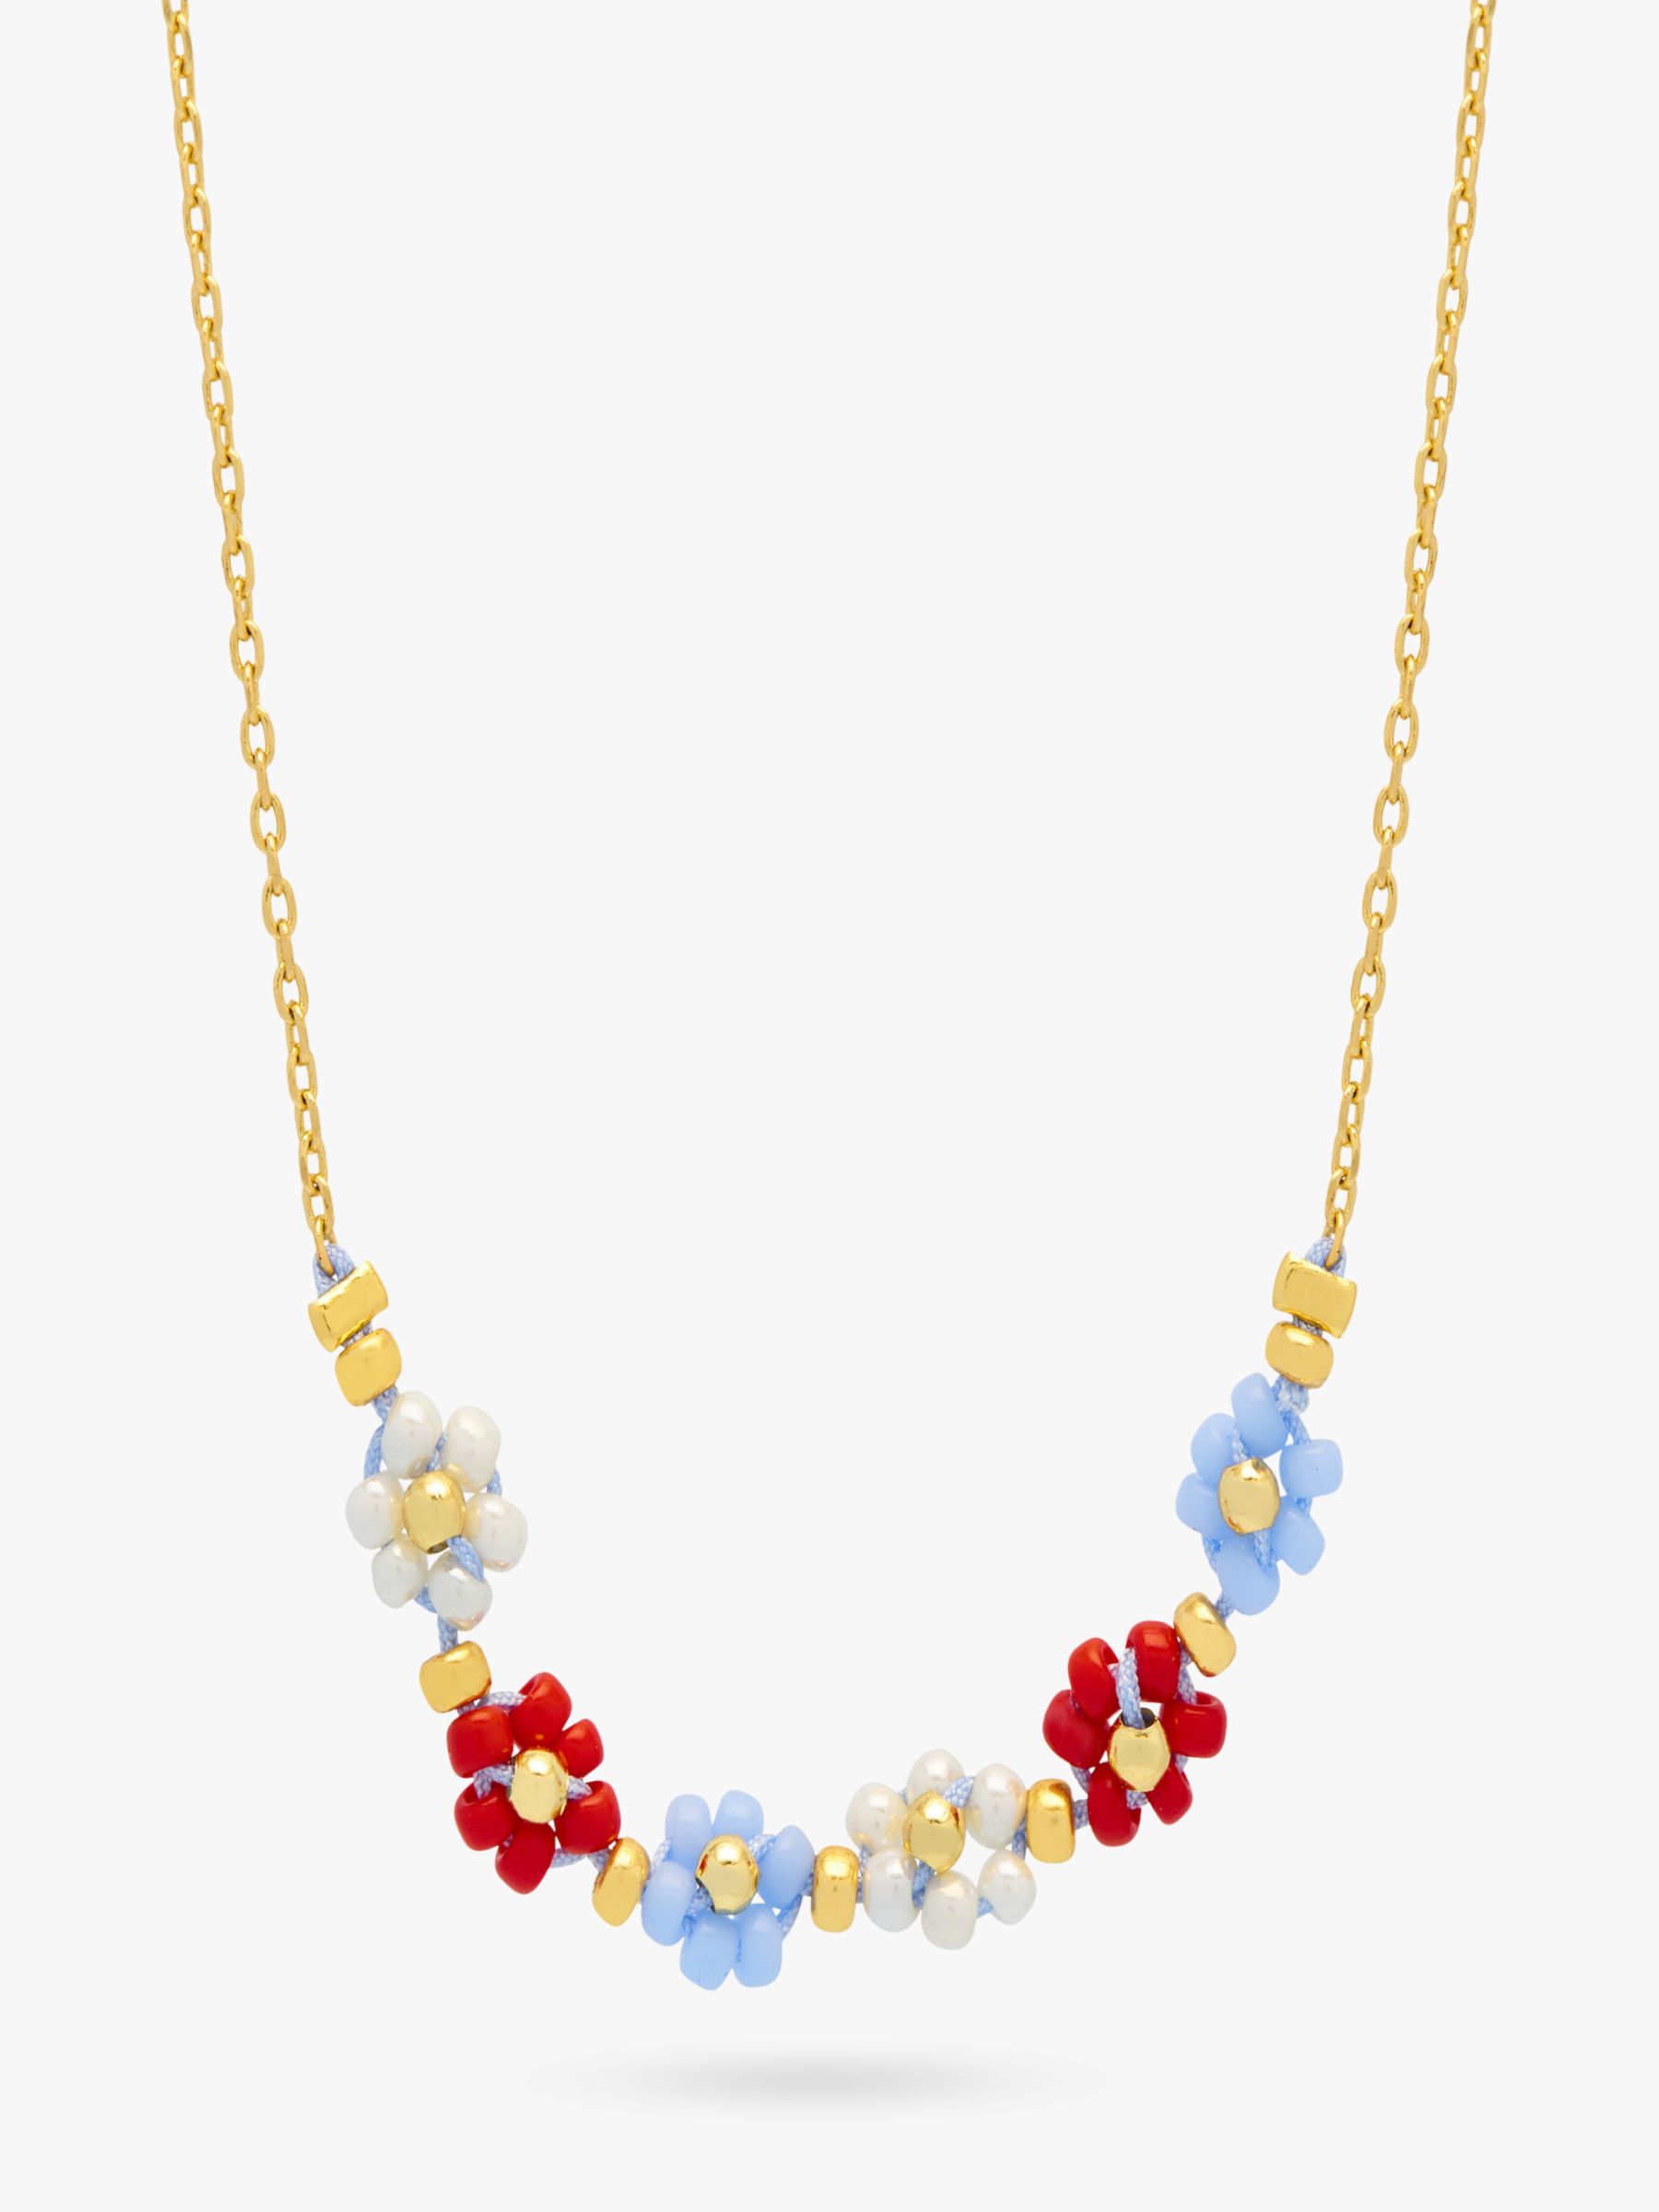 Estella Bartlett Daisy Chain Necklace, Gold/Multi